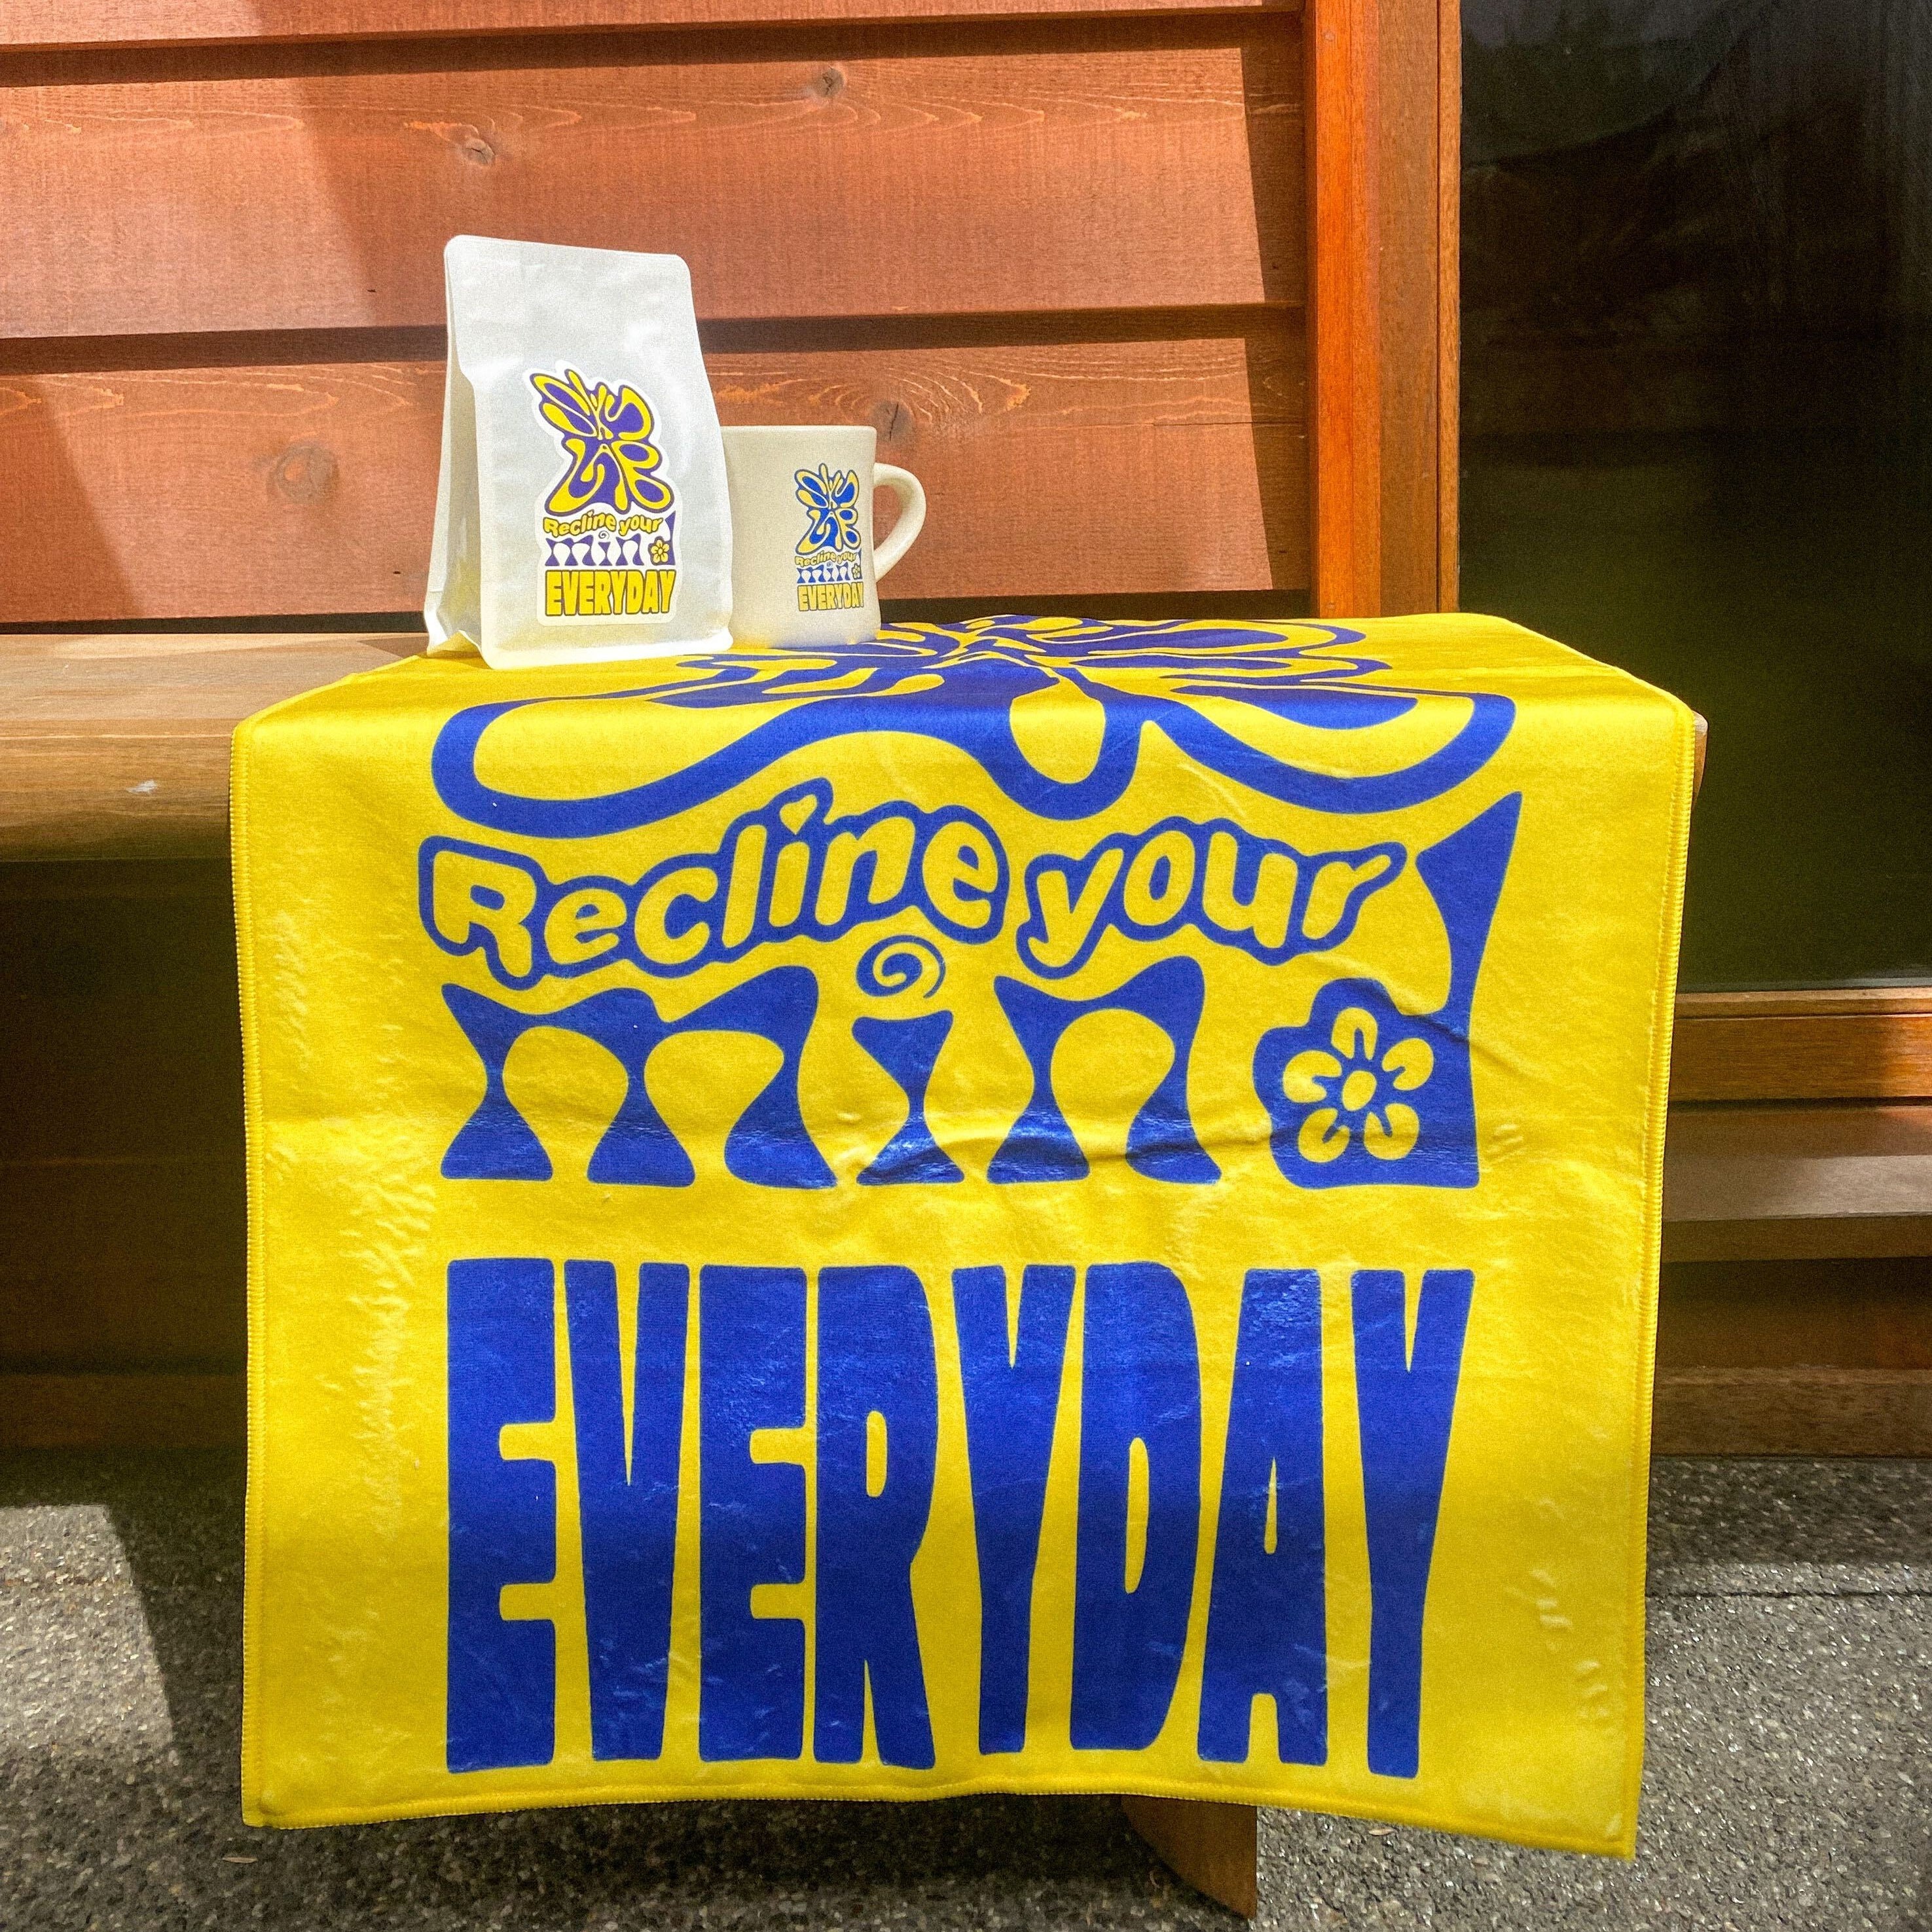 Skylab x Everyday “Recline Your Mind” Sauna Towel Yellow